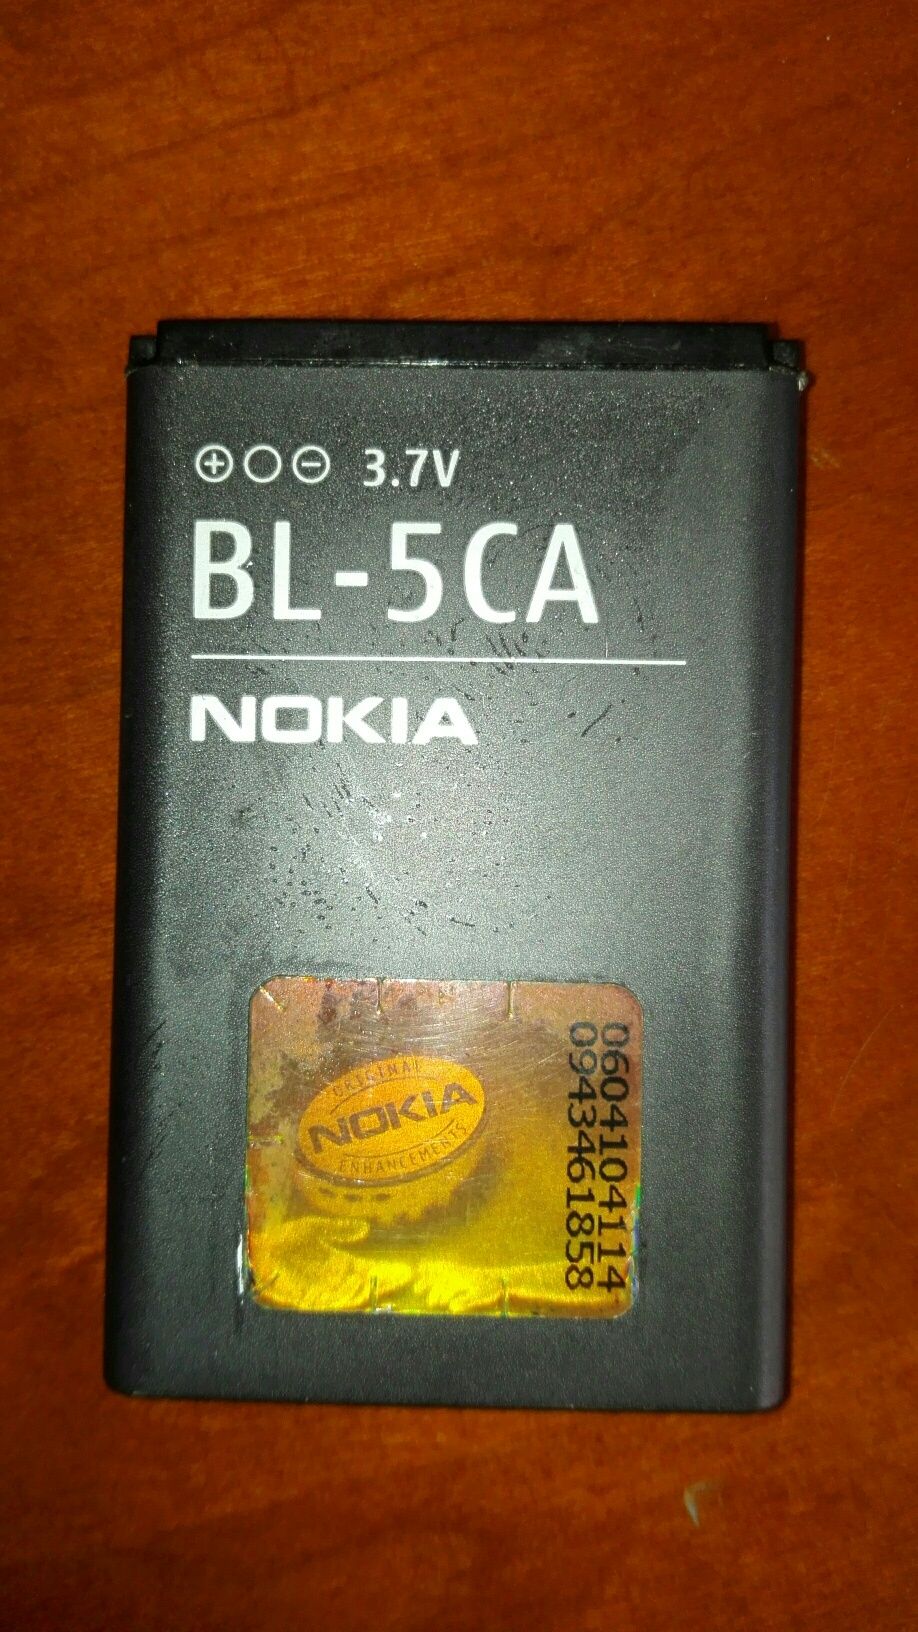 Bateria Nokia BL 5 CA